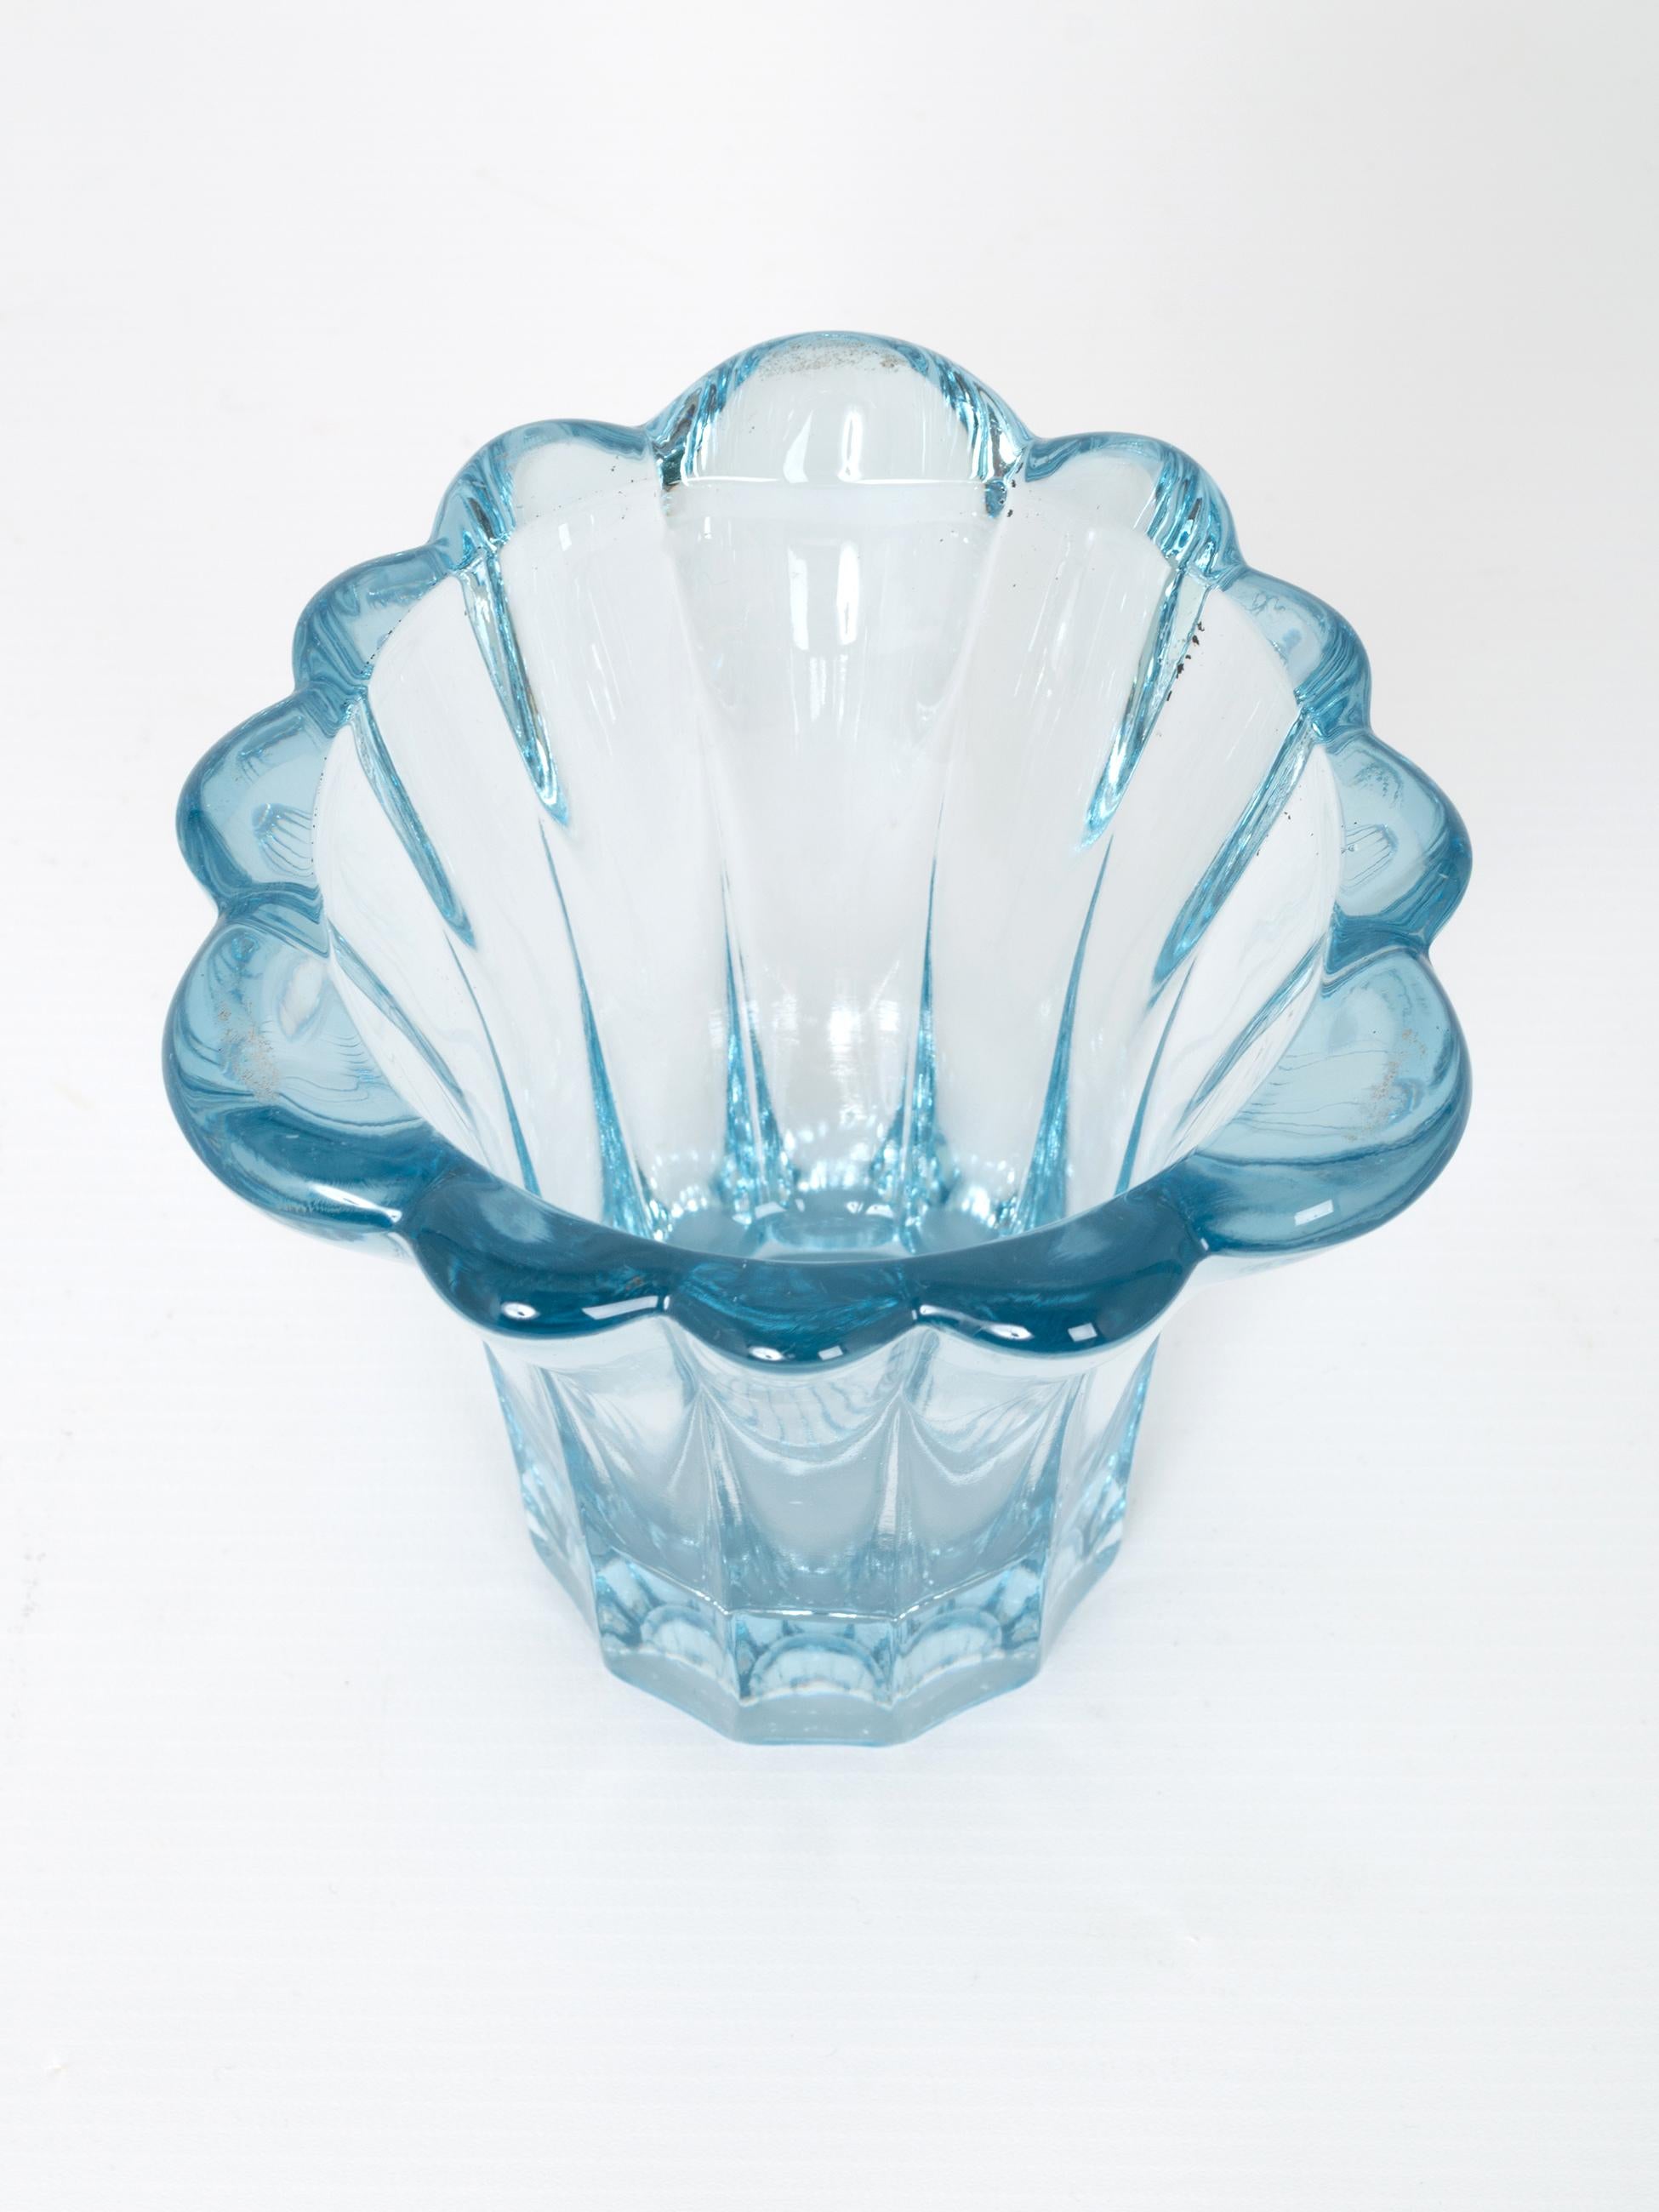 aqua blue vases